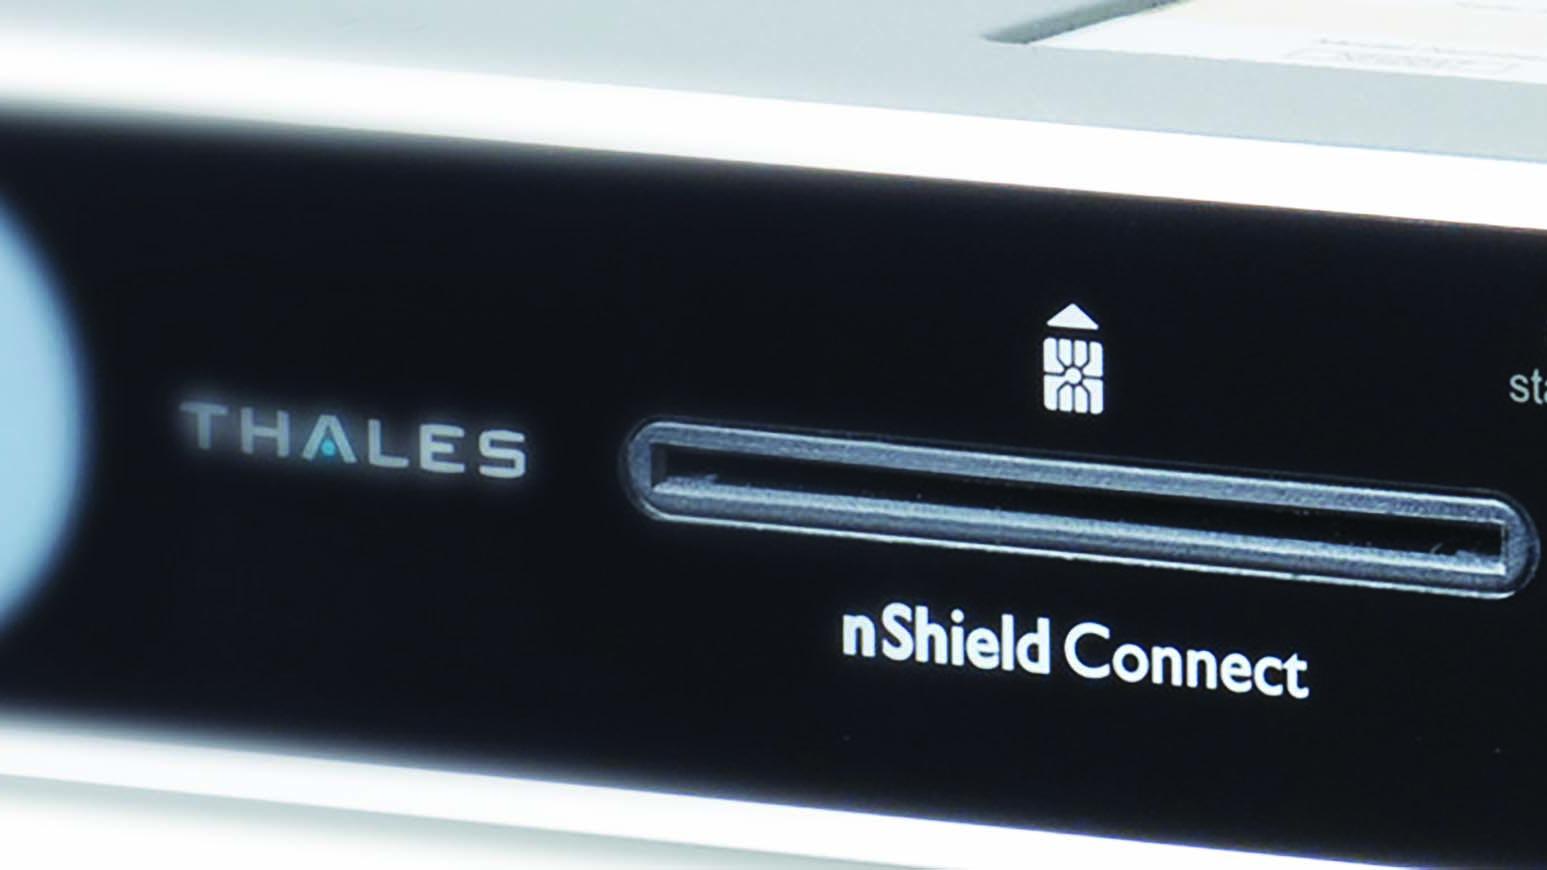 وفّرت الأجهزة الأمنية الكمبيوترية HSM من Thales على مدى عقود إدارة مفاتيح موثوقة وذات ضمانة عالية